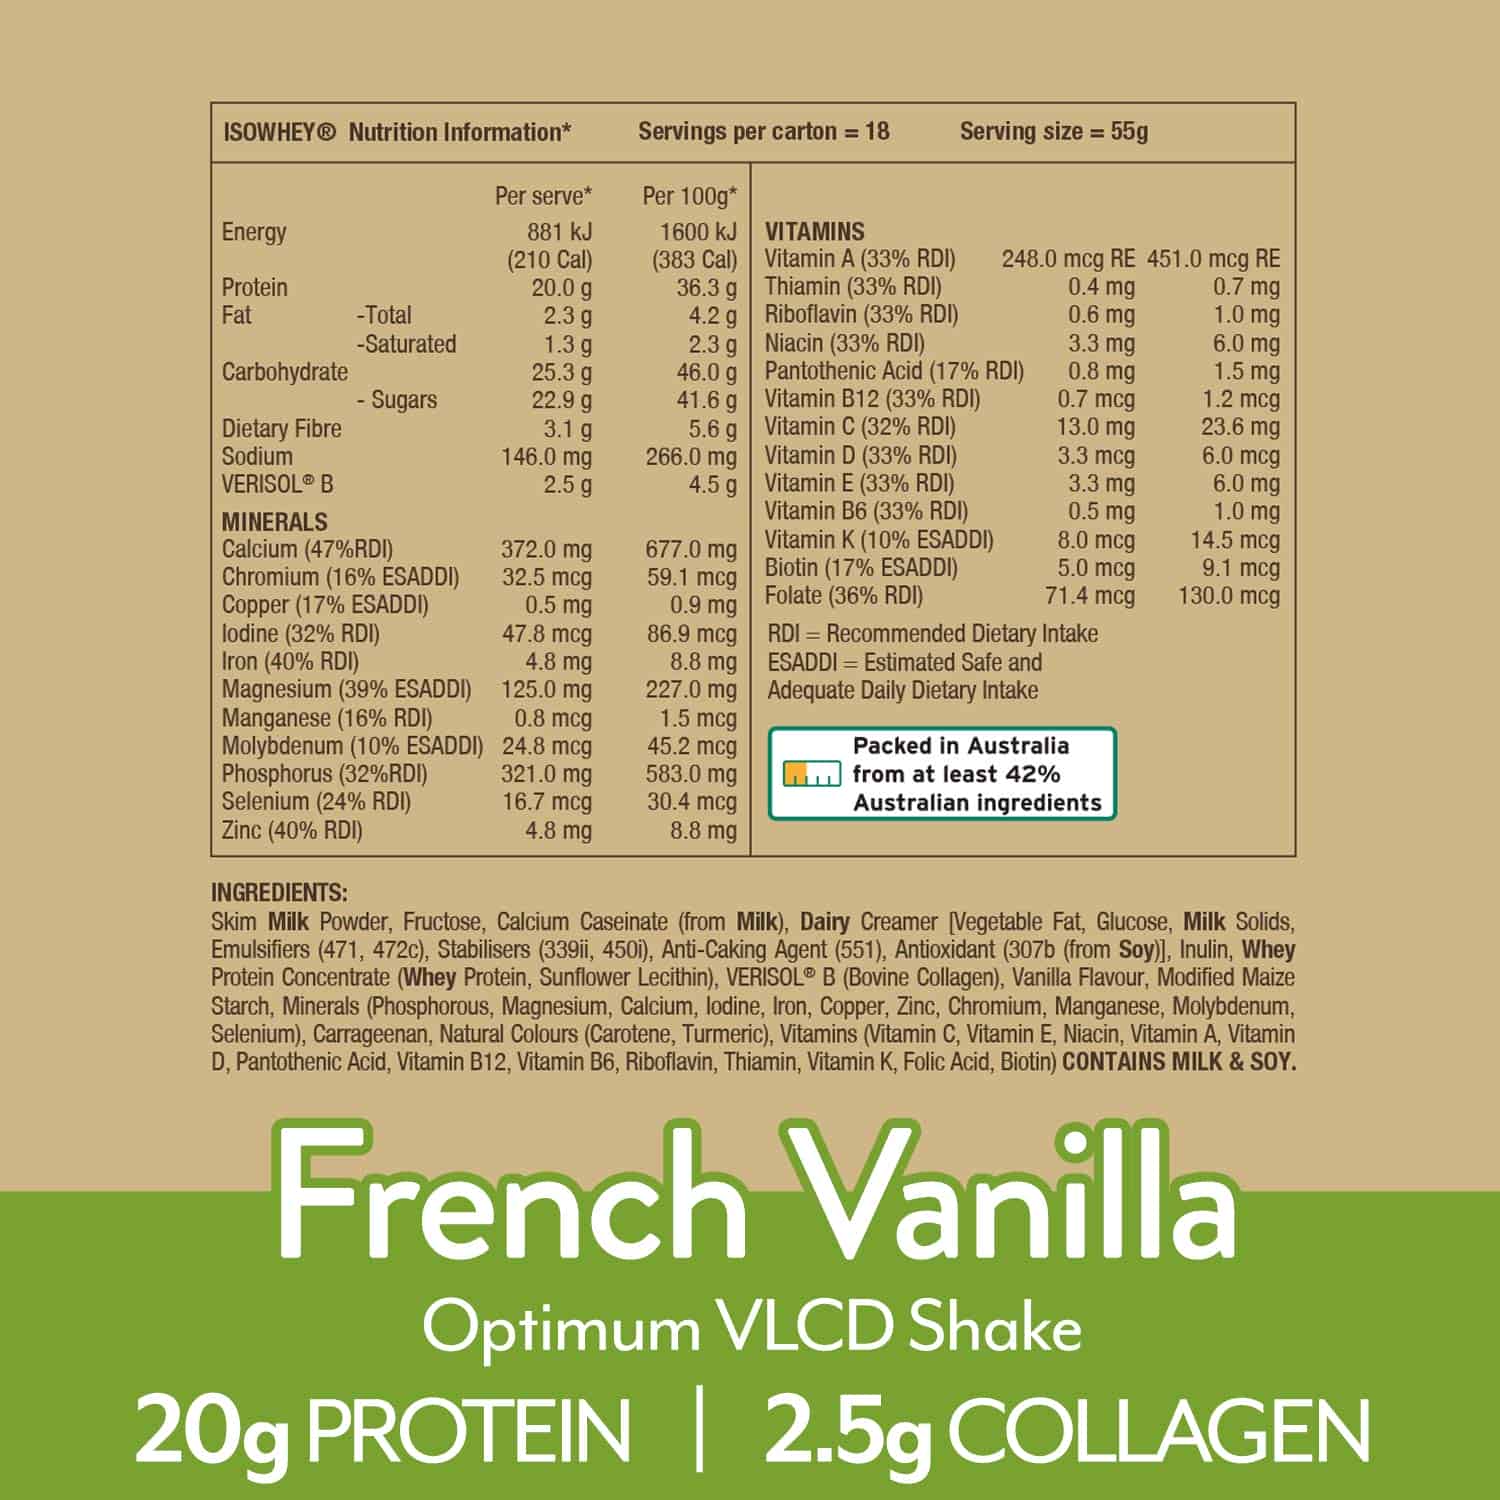 IsoWhey Optimum VLCD Shake French Vanilla 55g